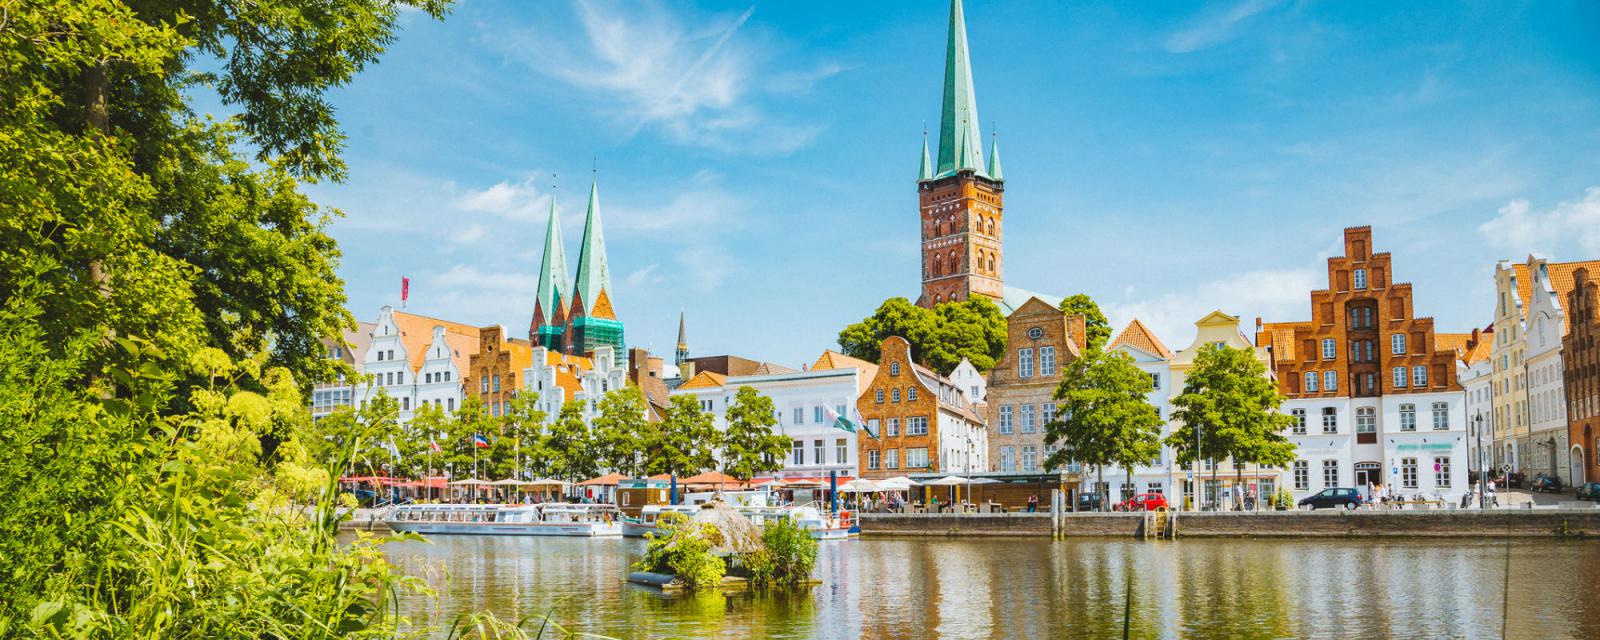 5x de mooiste bezienswaardigheden van Lübeck 